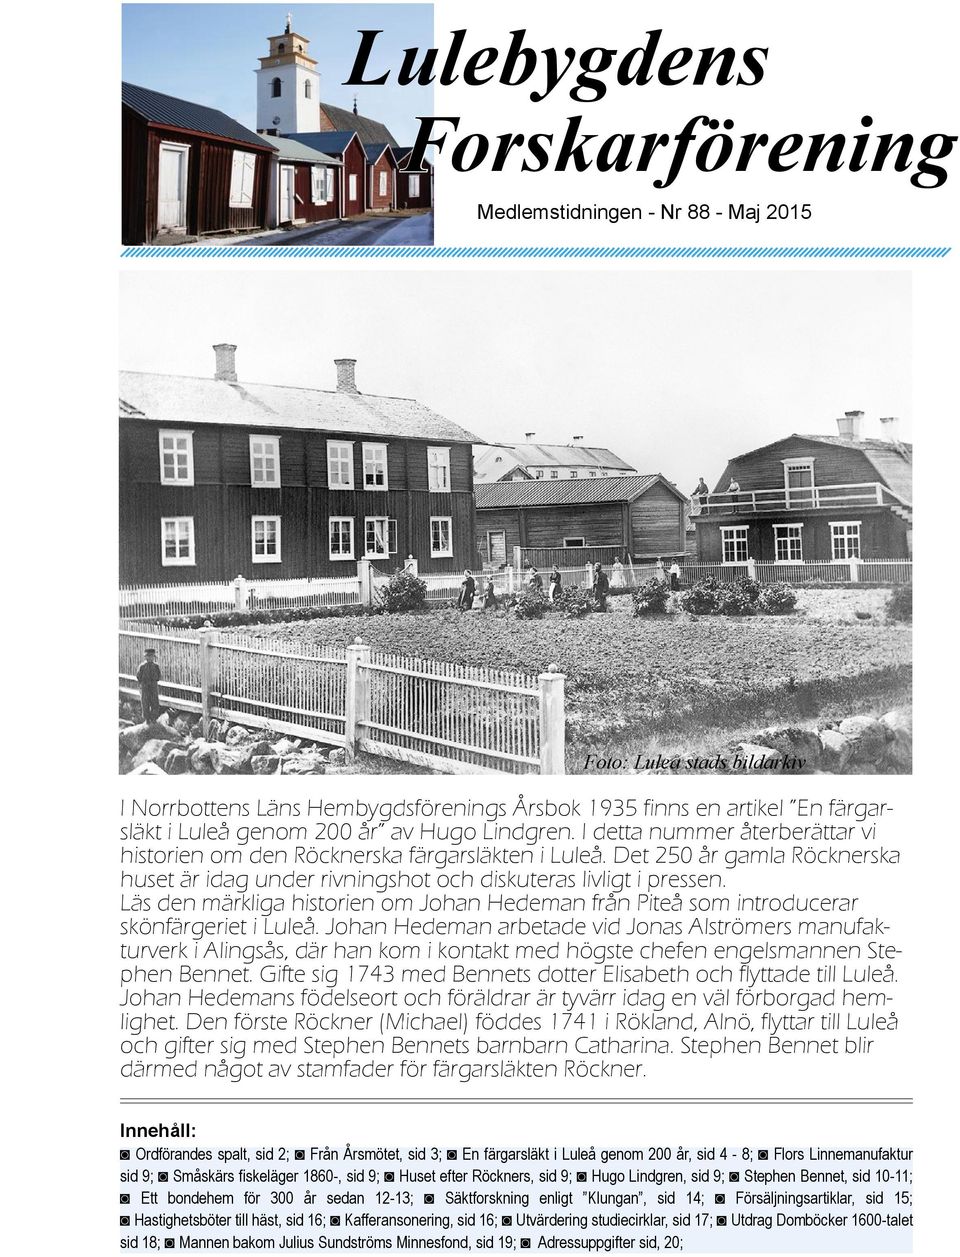 Det 250 år gamla Röcknerska huset är idag under rivningshot och diskuteras livligt i pressen. Läs den märkliga historien om Johan Hedeman från Piteå som introducerar skönfärgeriet i Luleå.